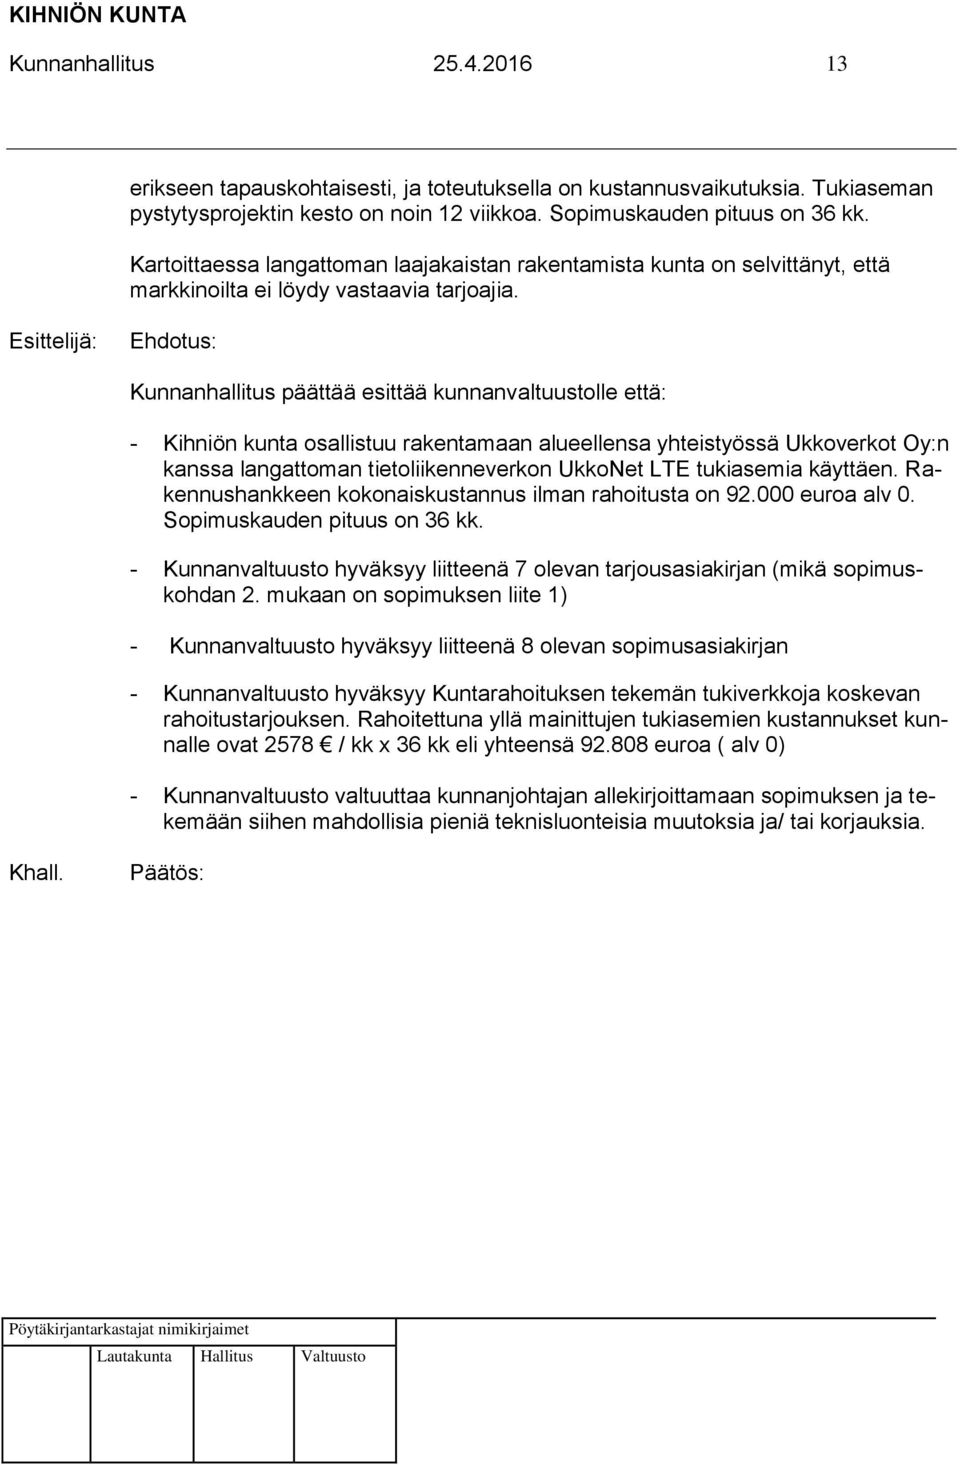 : Kunnanhallitus päättää esittää kunnanvaltuustolle että: - Kihniön kunta osallistuu rakentamaan alueellensa yhteistyössä Ukkoverkot Oy:n kanssa langattoman tietoliikenneverkon UkkoNet LTE tukiasemia